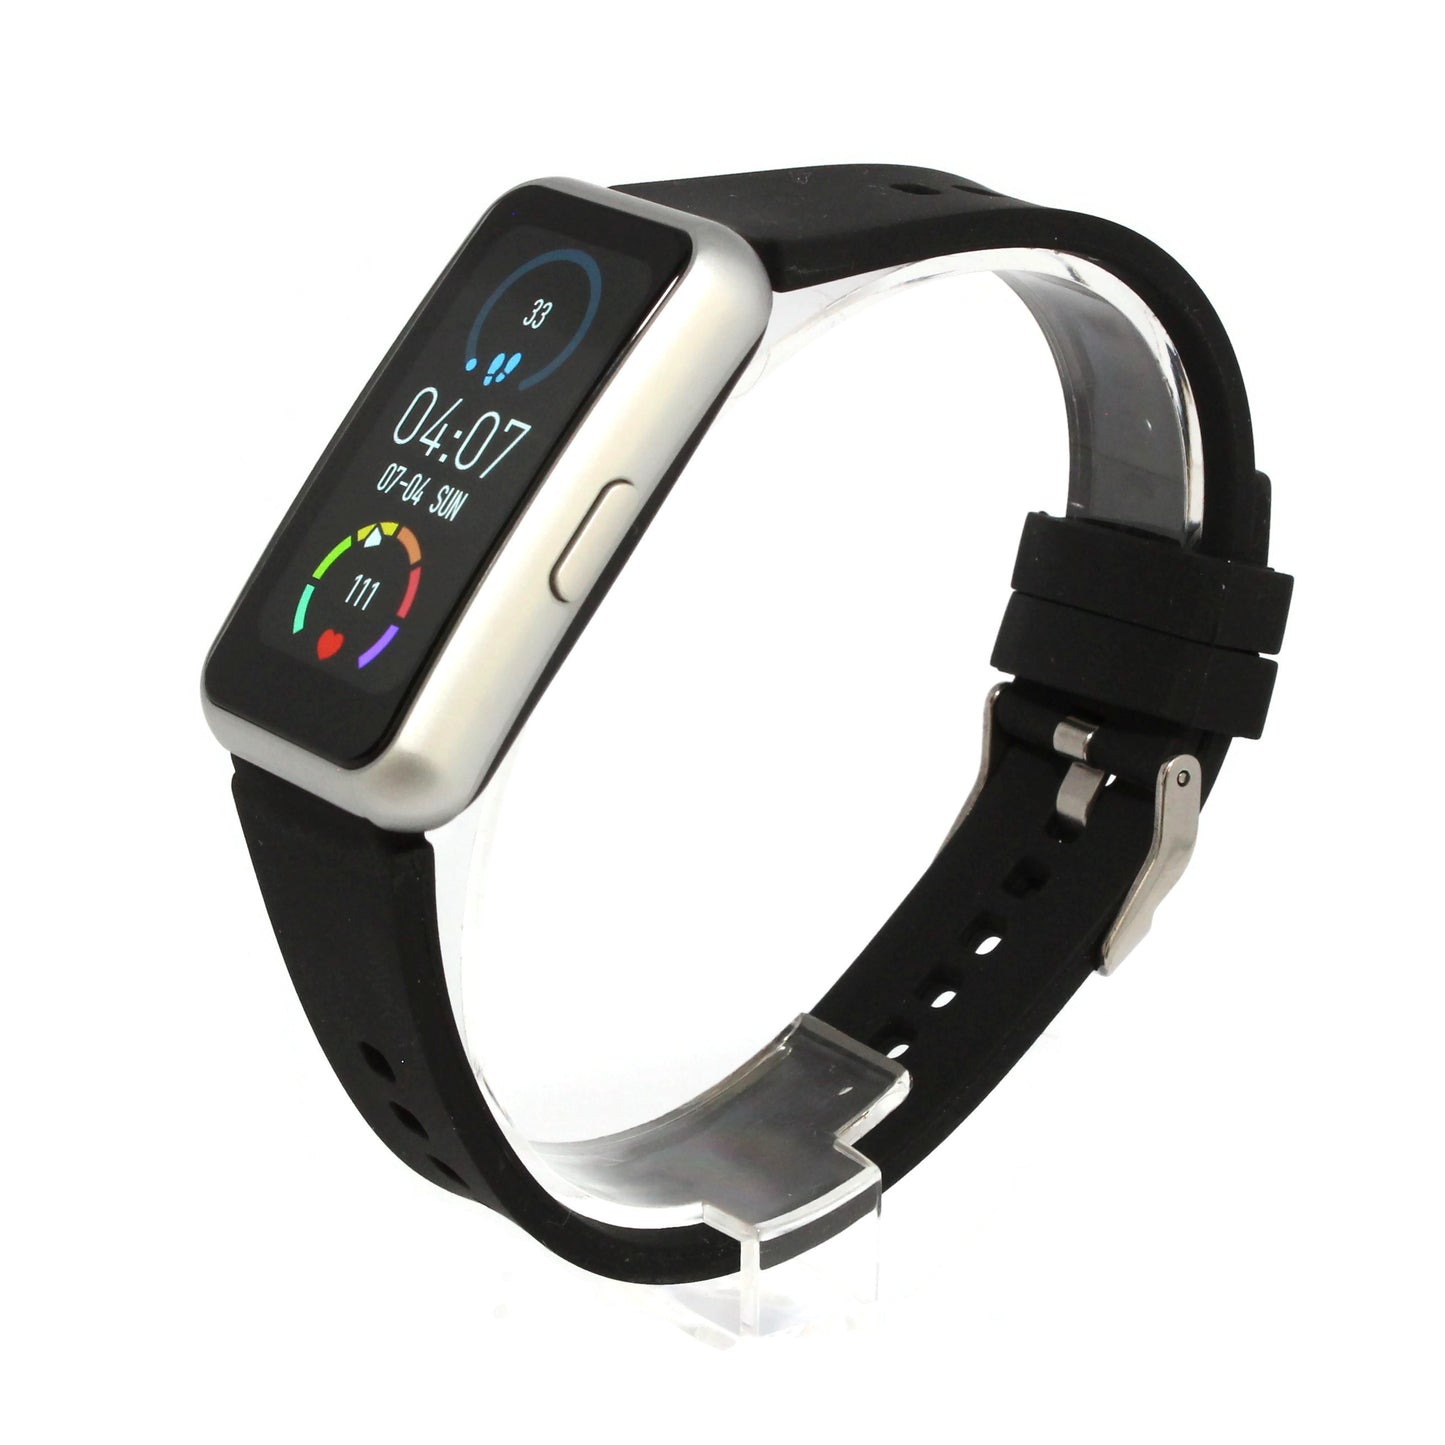 Fitnesstracker mit Puls Blutdruck Sauerstoff Schlaf Schritte Smartwatch - 9720/7